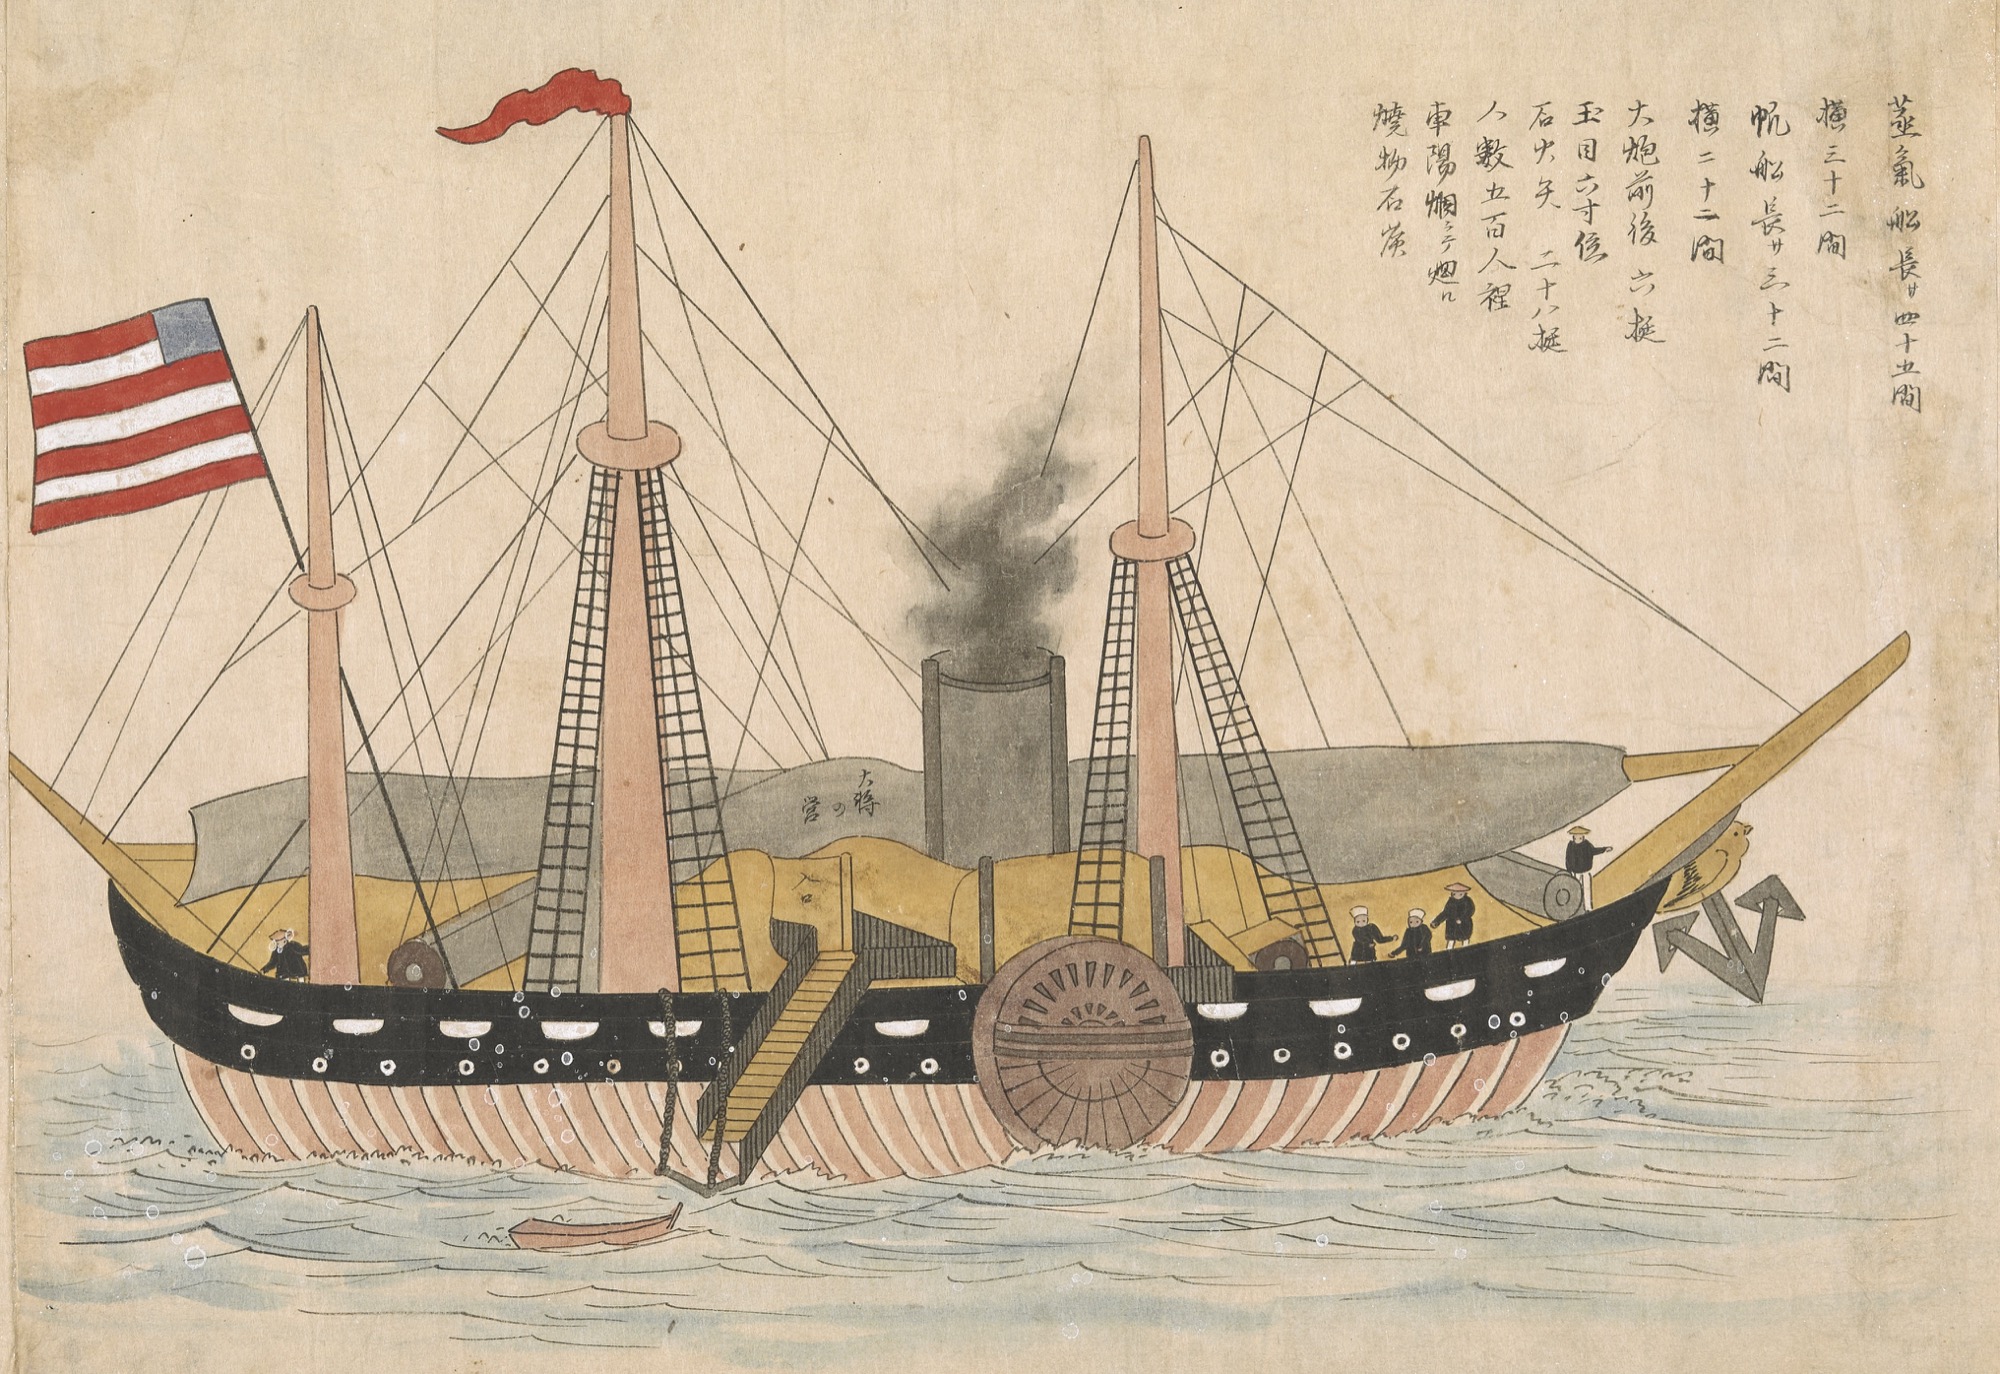 Una delle quattro navi della prima spedizione ufficiale statunitense in Giappone nel 1853 (fonte: British Library manuscript Or.16453).